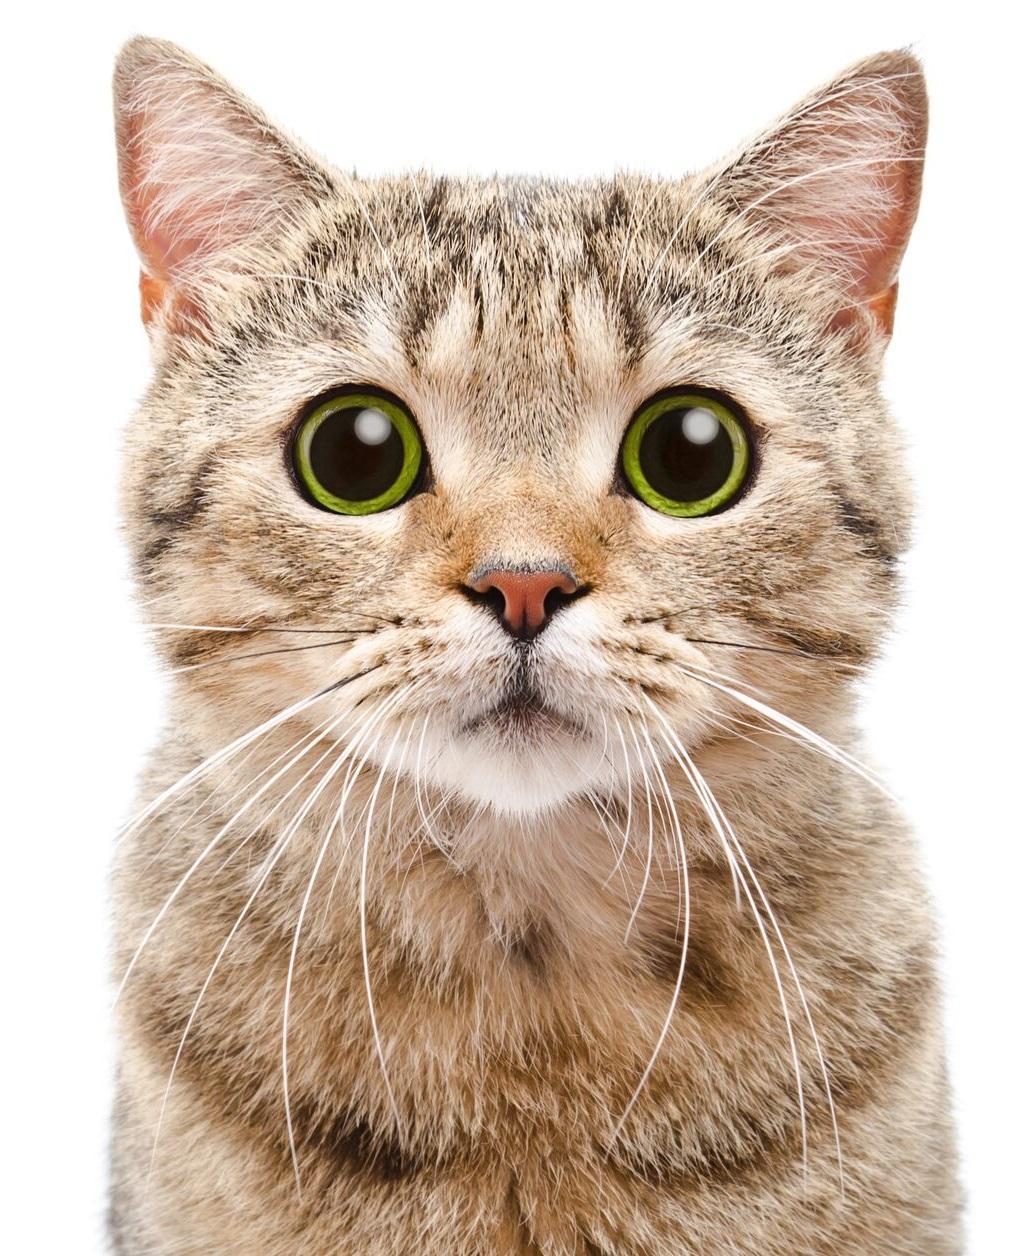 35 Gambar Wallpaper Hd Android Cat terbaru 2020